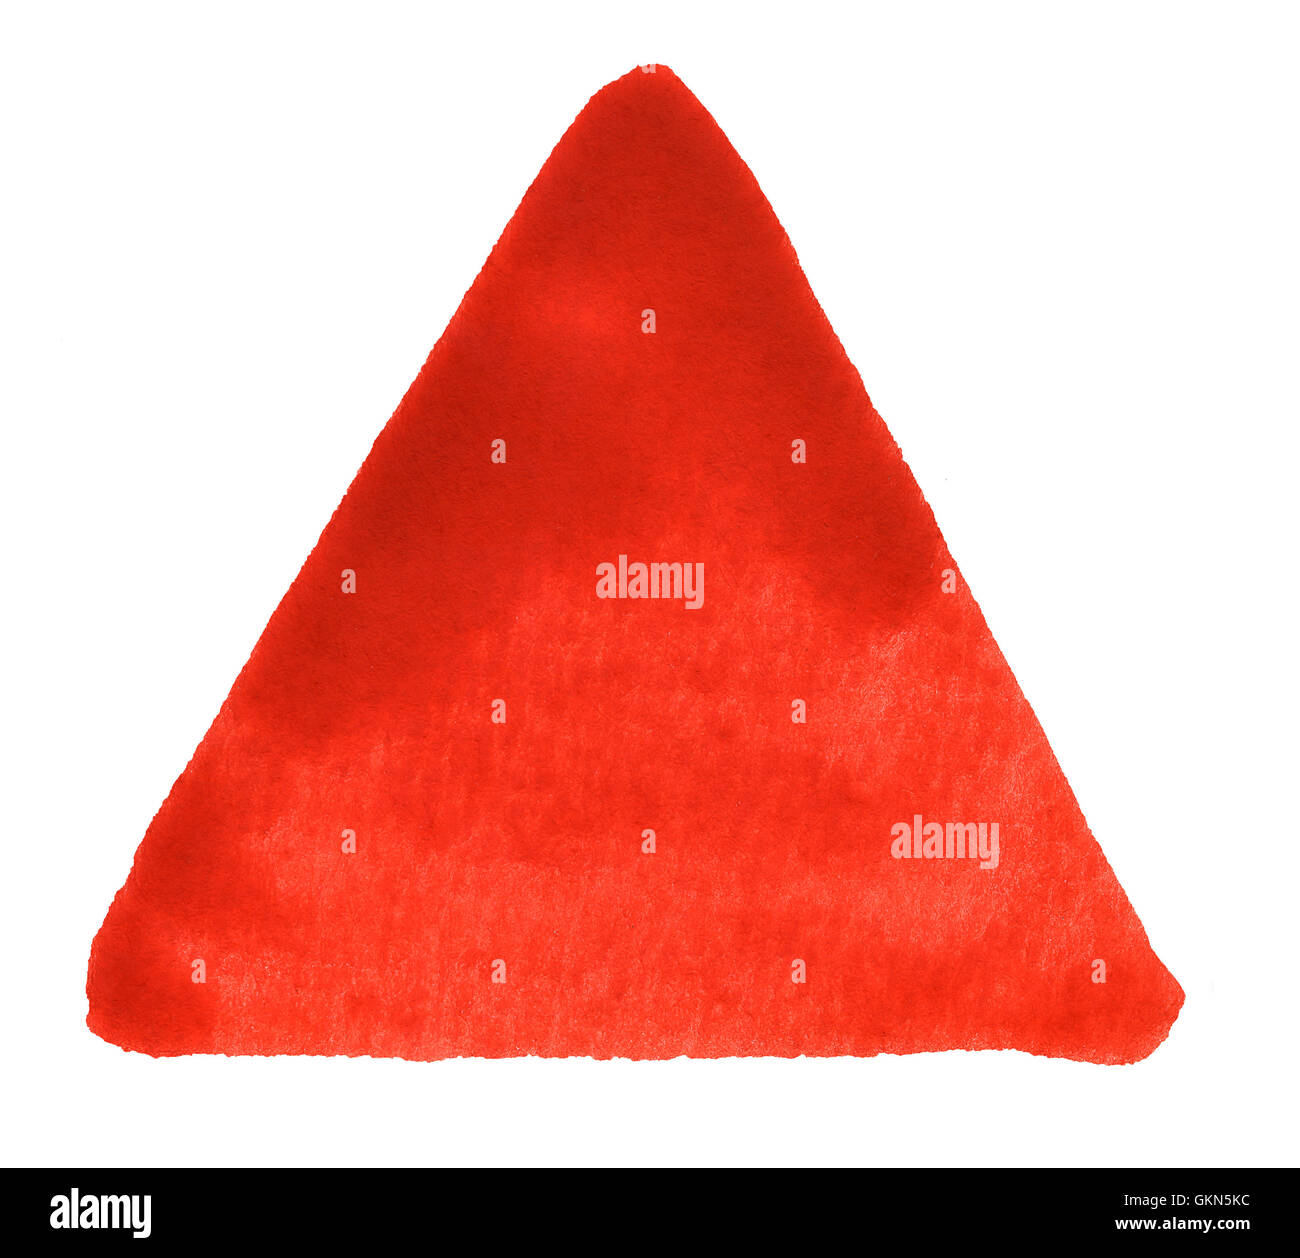 Un triangle rouge blanc retour à l'aquarelle Banque D'Images